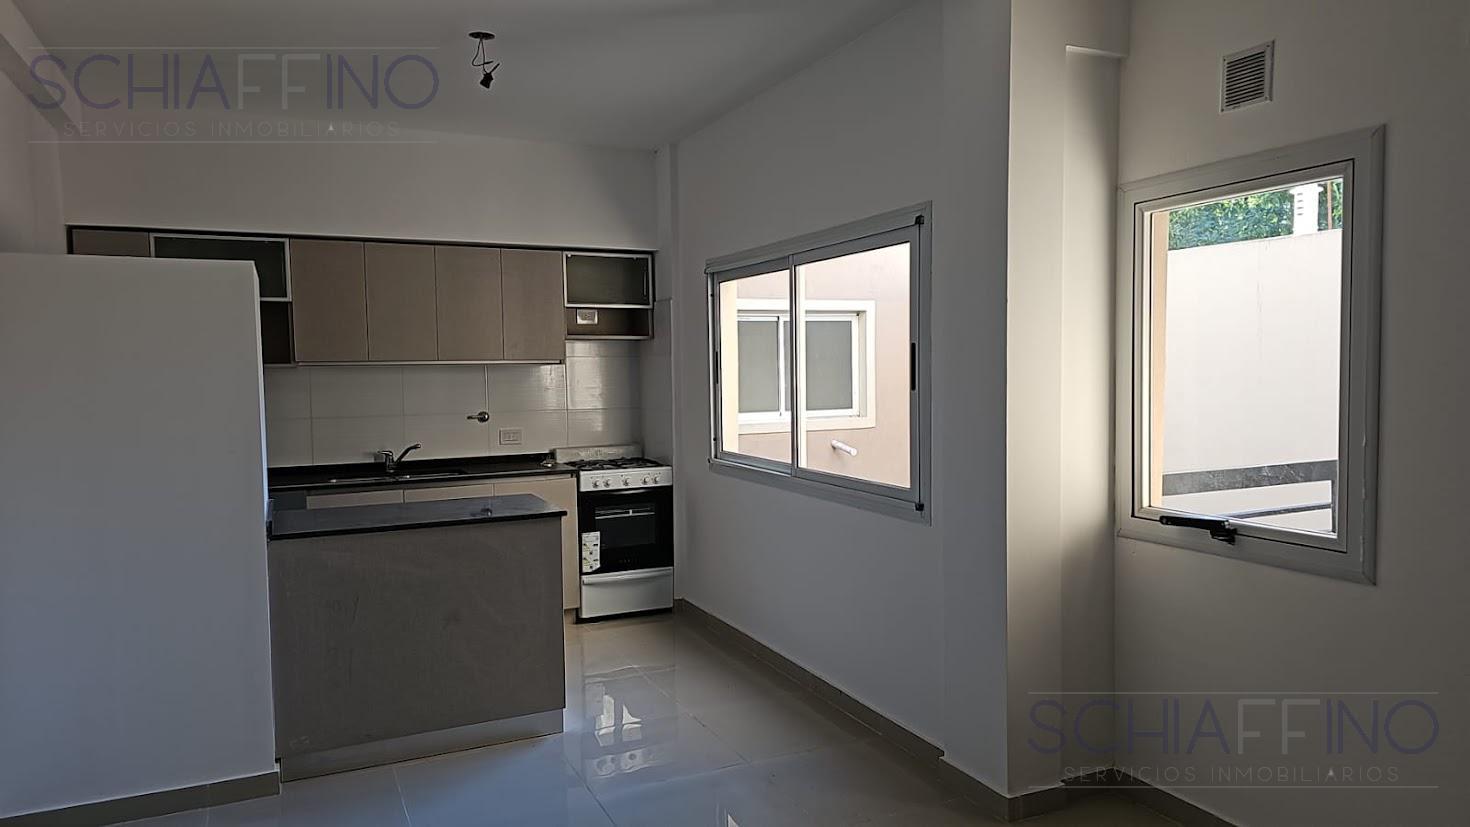 #5062353 | Rental | Apartment | Parque Avellaneda (SCHIAFFINO Servicios Inmobiliarios. )